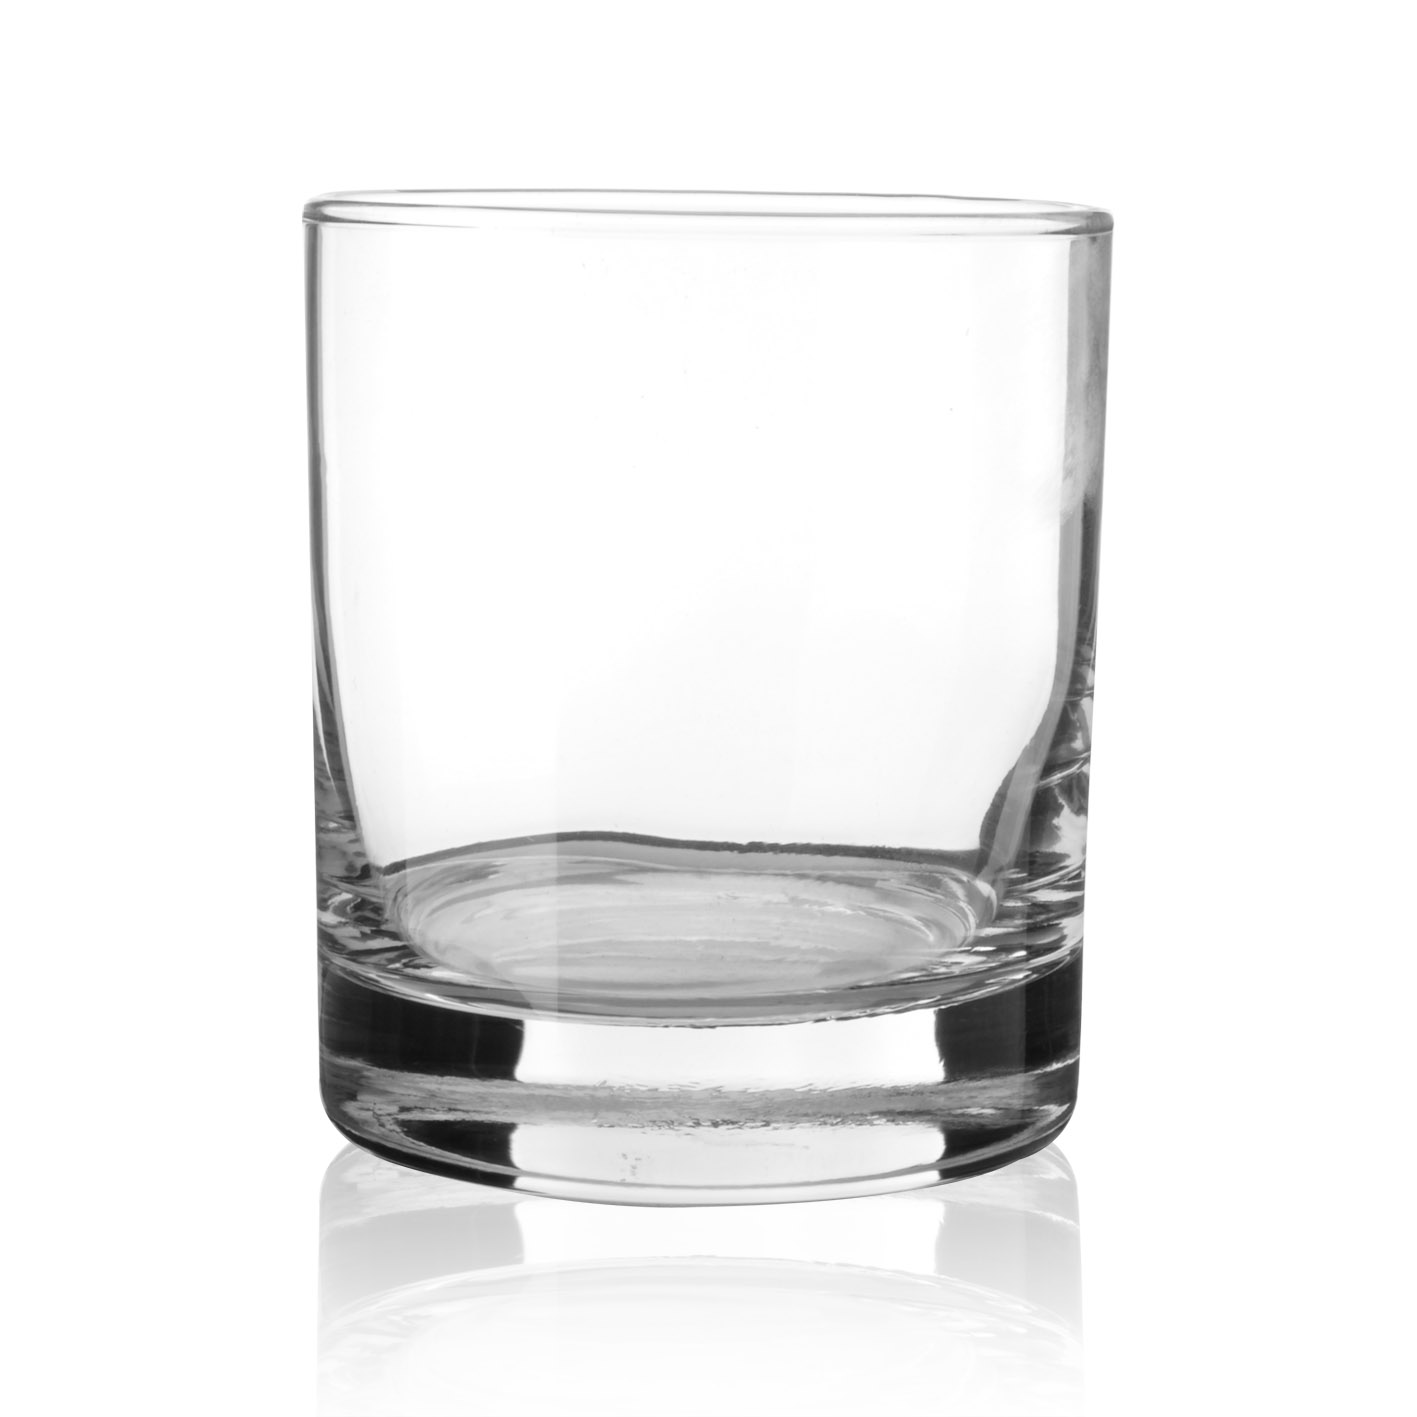 10.5安古典杯 洛克杯 威士忌杯 直身古典杯 居家实用酒杯 玻璃杯